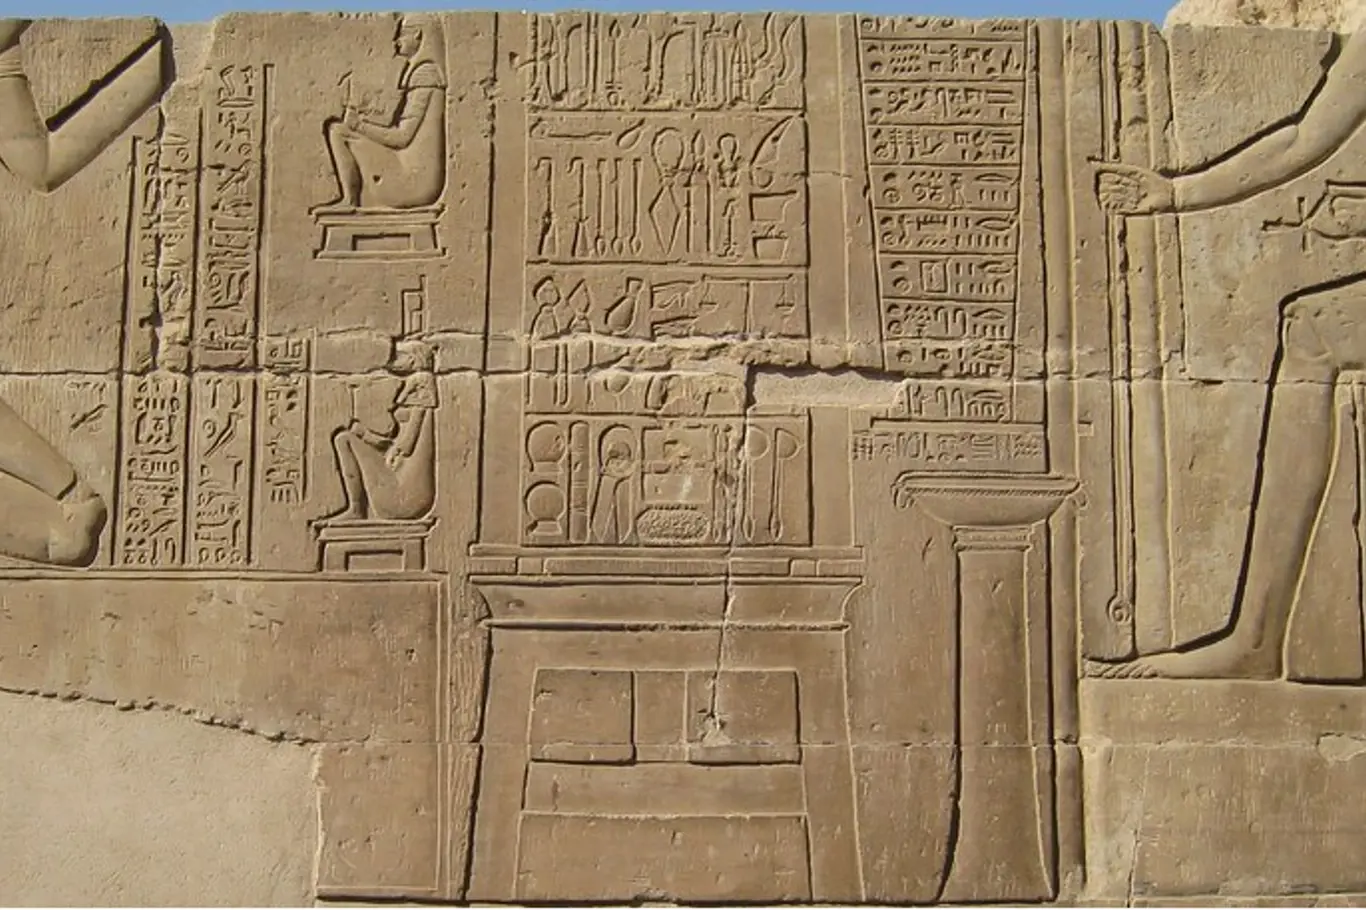 Rytina na zdech chrámu Kom Ombo. Některé nástroje používali lékaři ve starověkém Egyptě už 2200 let dříve, než byly nástroje známy ostatním civilizacím.